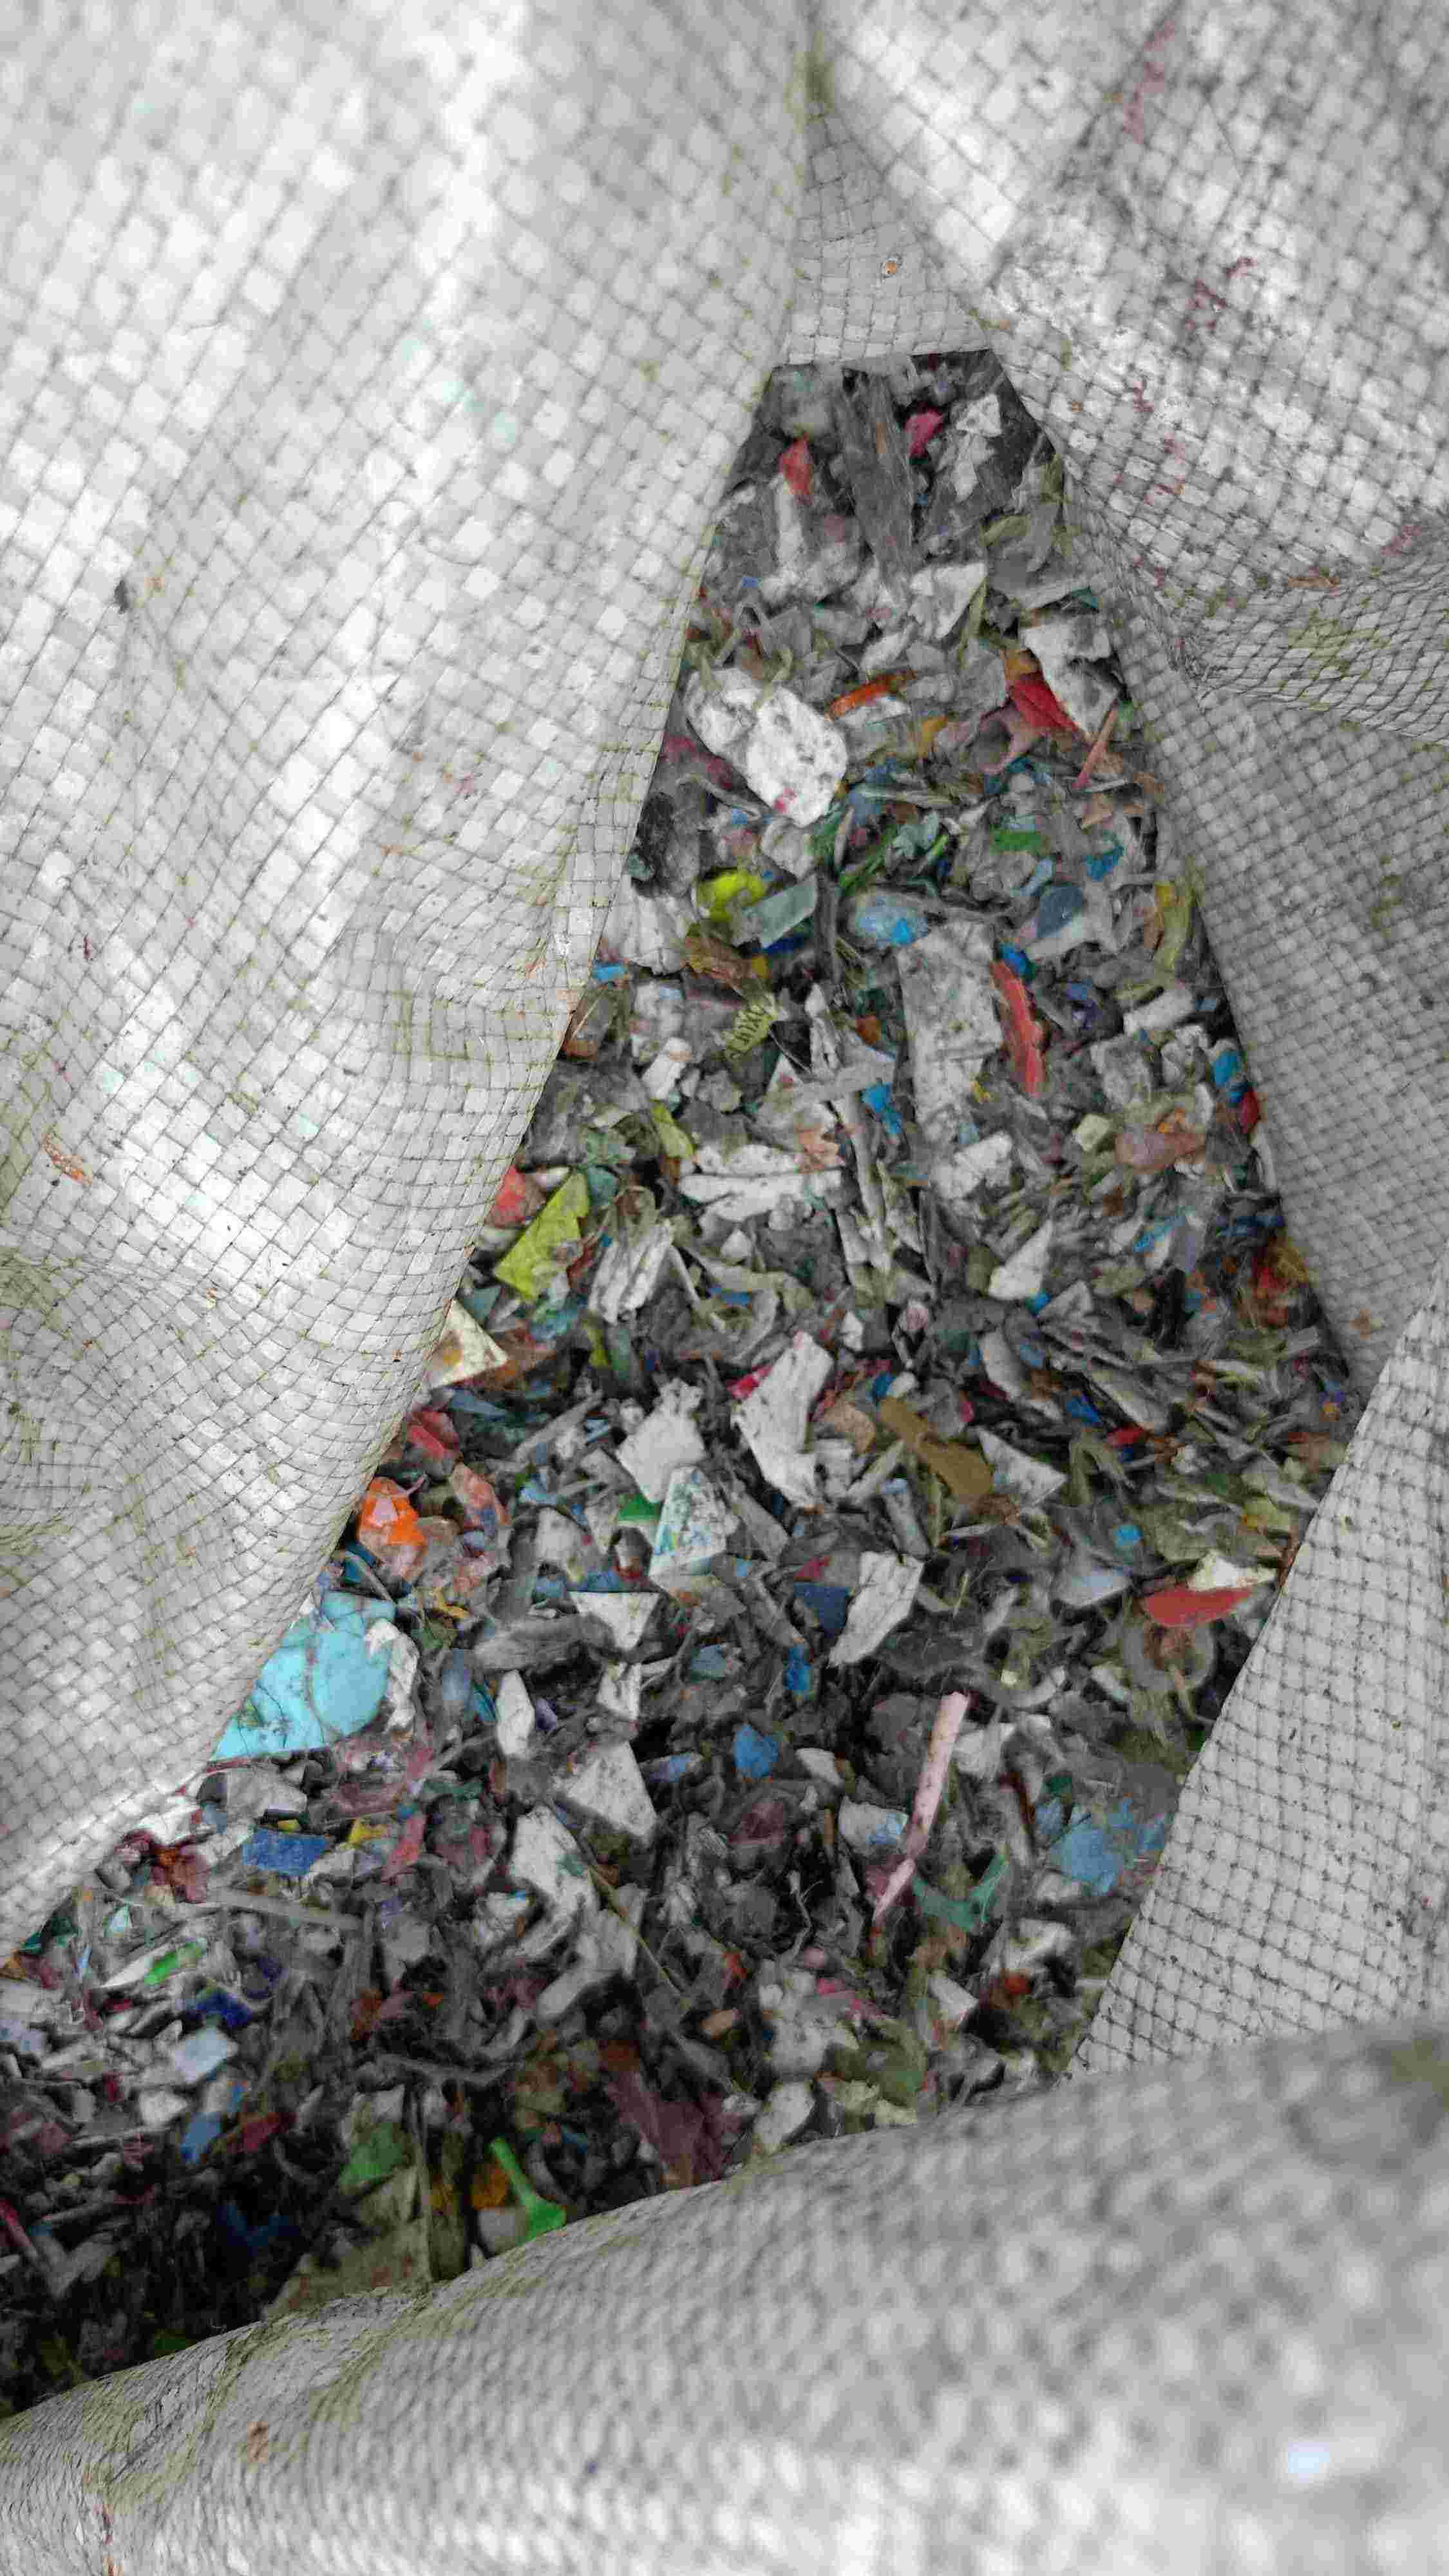 ALL PLASTIC SCRAP Plastic Waste Mix Material Mix Scrap halol gujarat india Plastic4trade